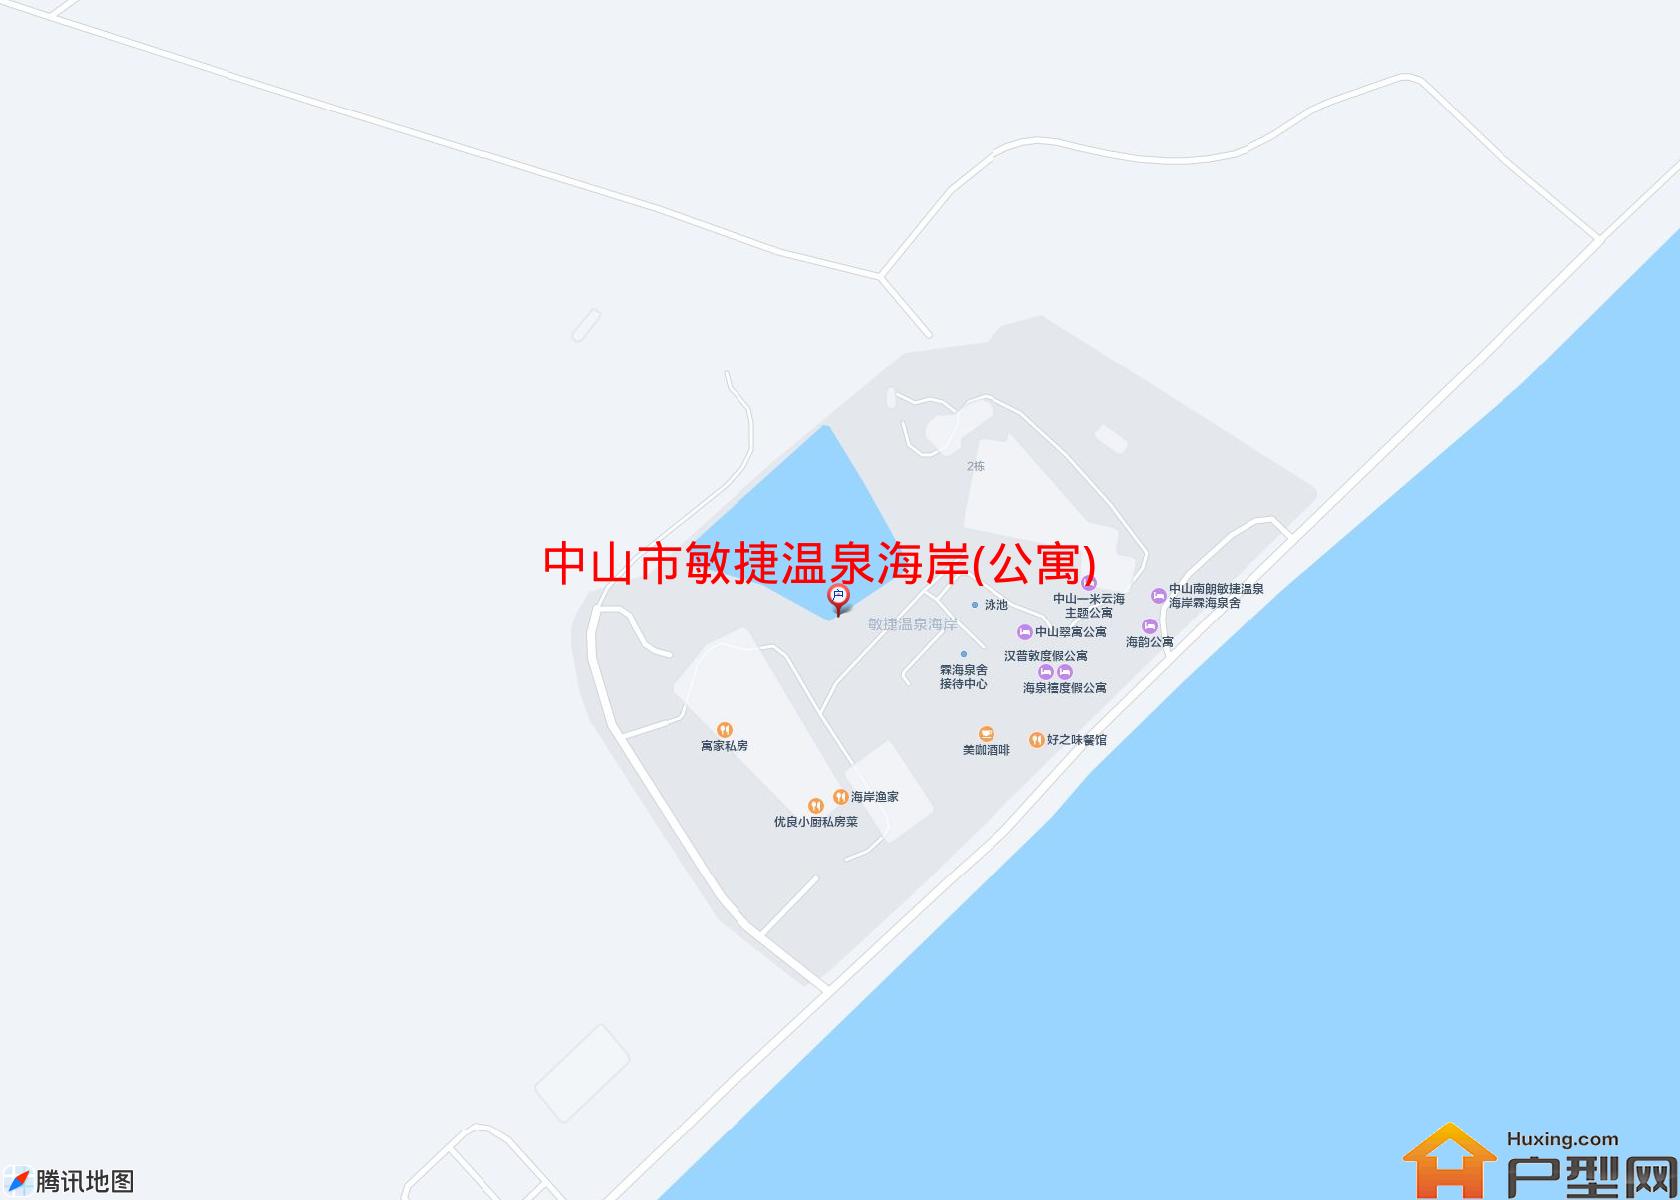 敏捷温泉海岸(公寓)小区 - 户型网